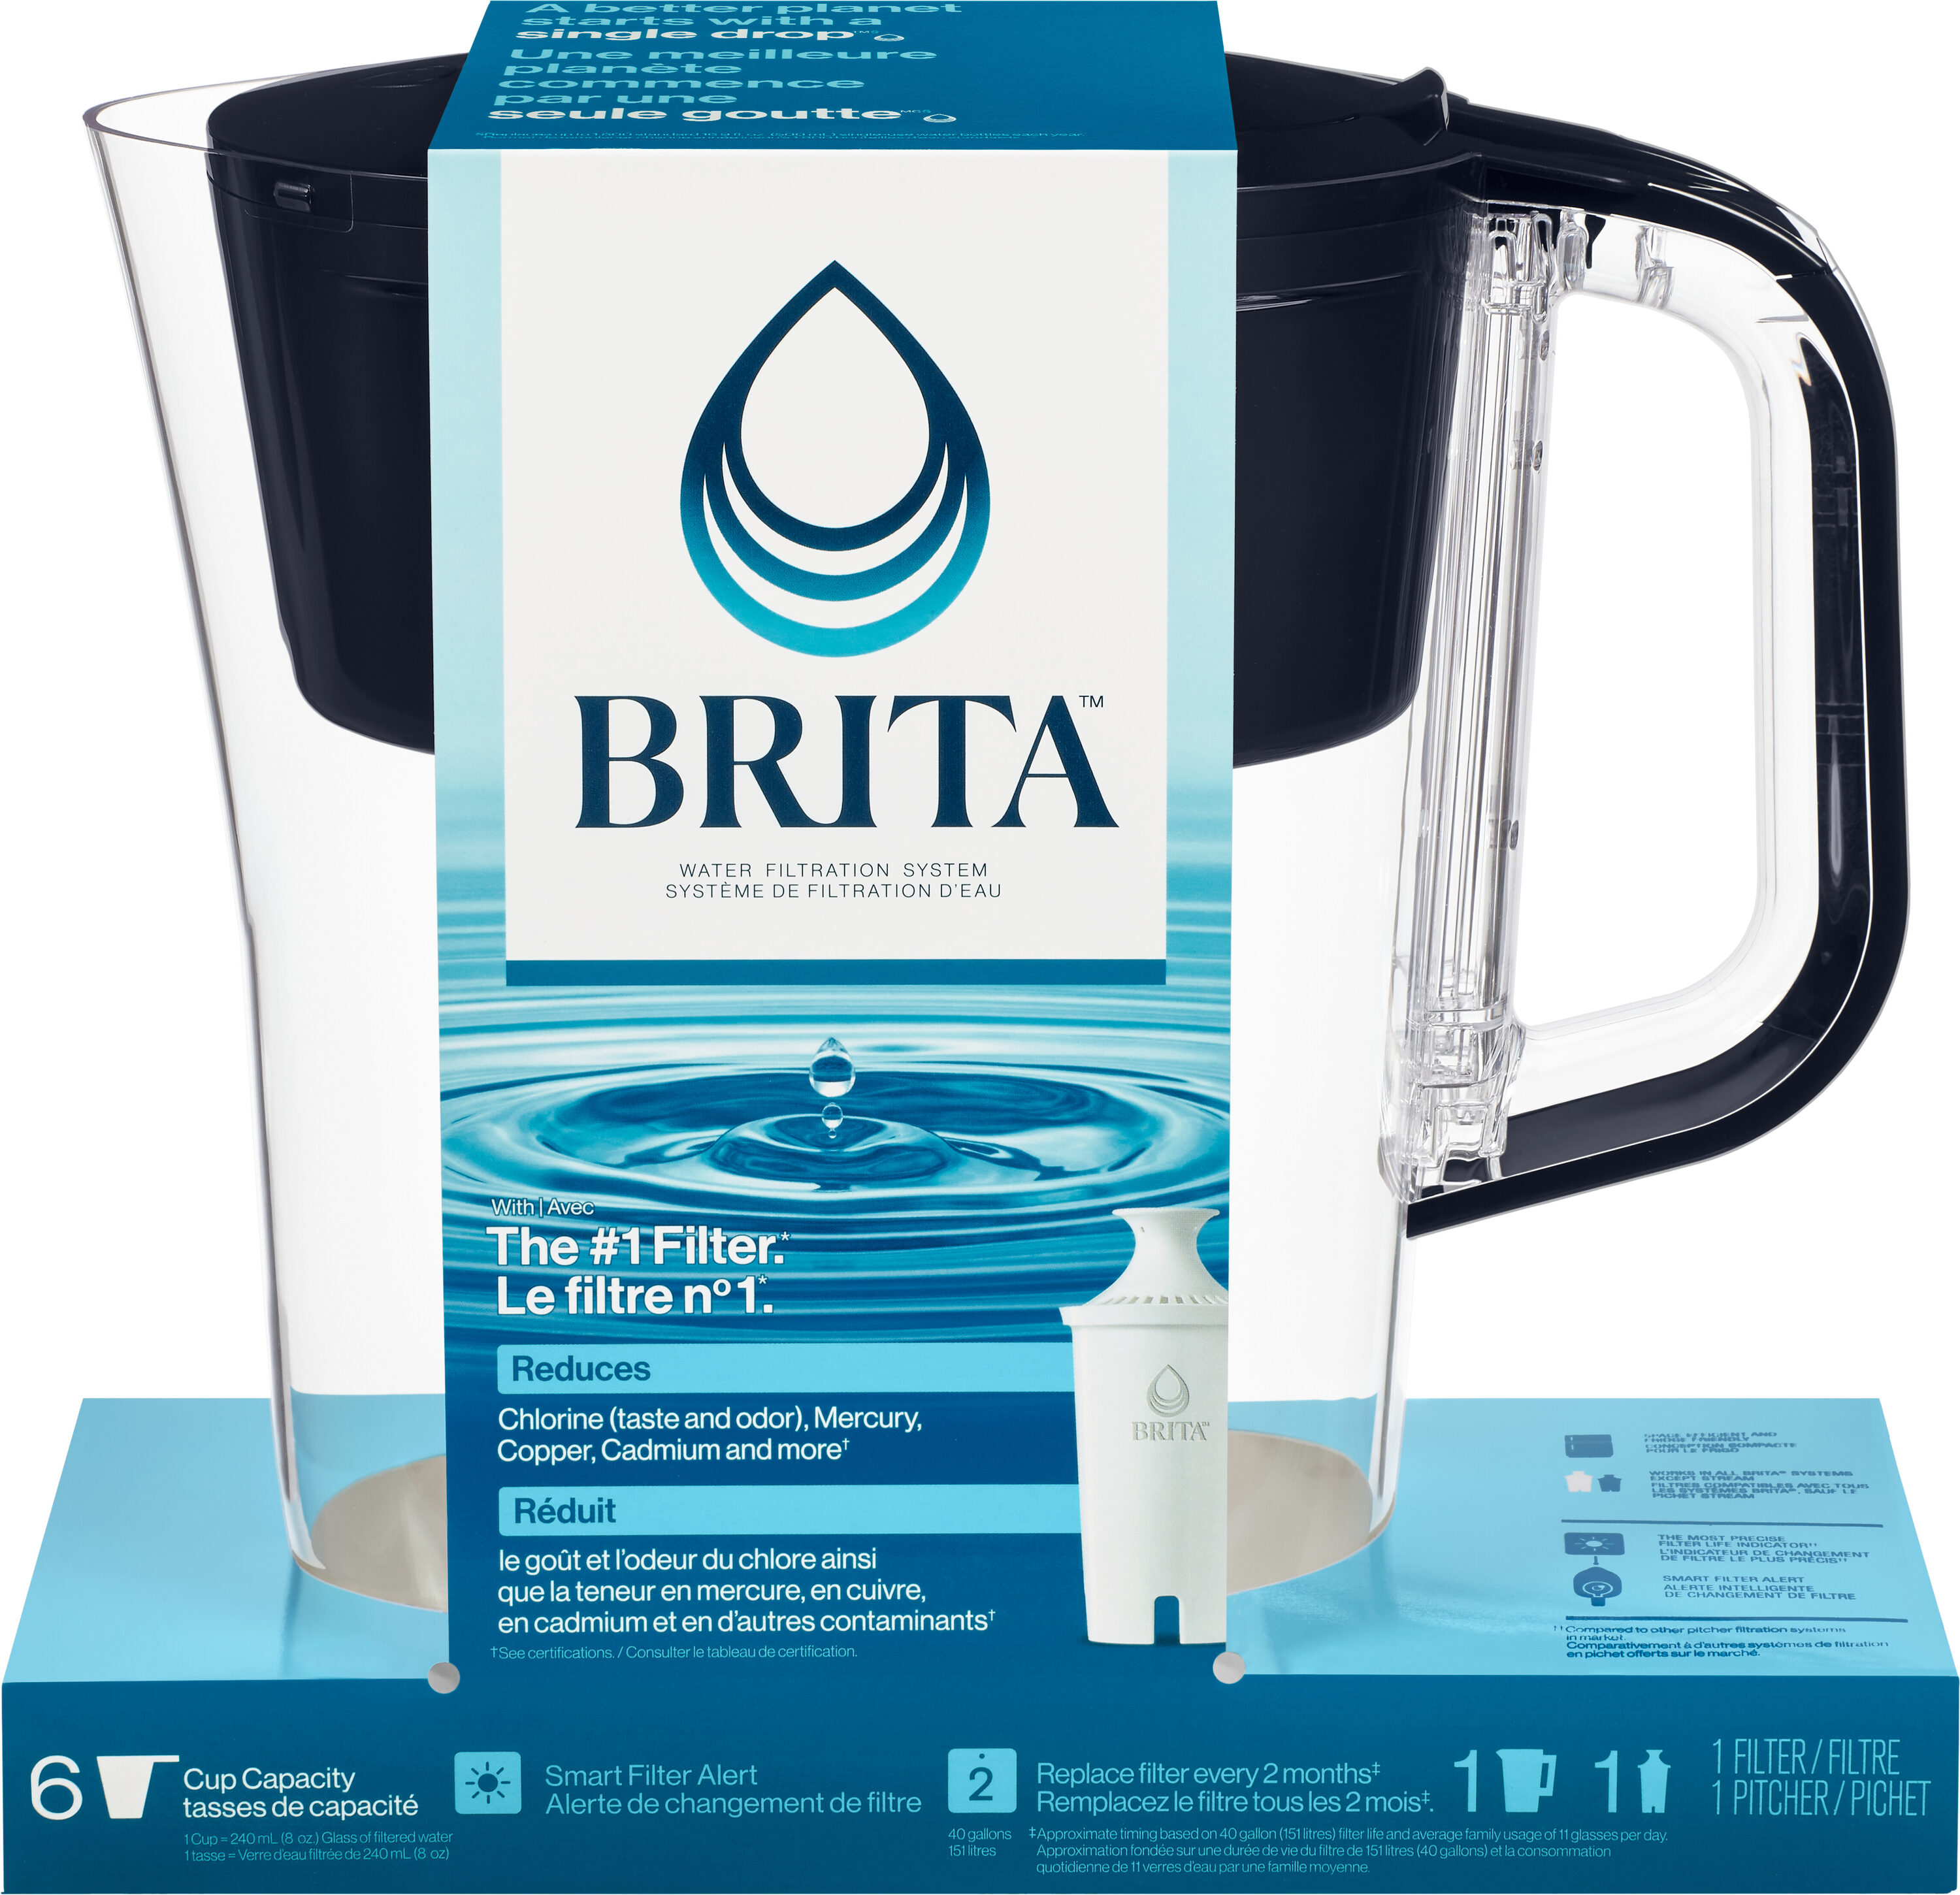 Carafe à filtre BRITA Style Cool Blue, 2,4 l + filtre à eau BRITA Maxtra  PRO All-In-1 - Coffee Friend